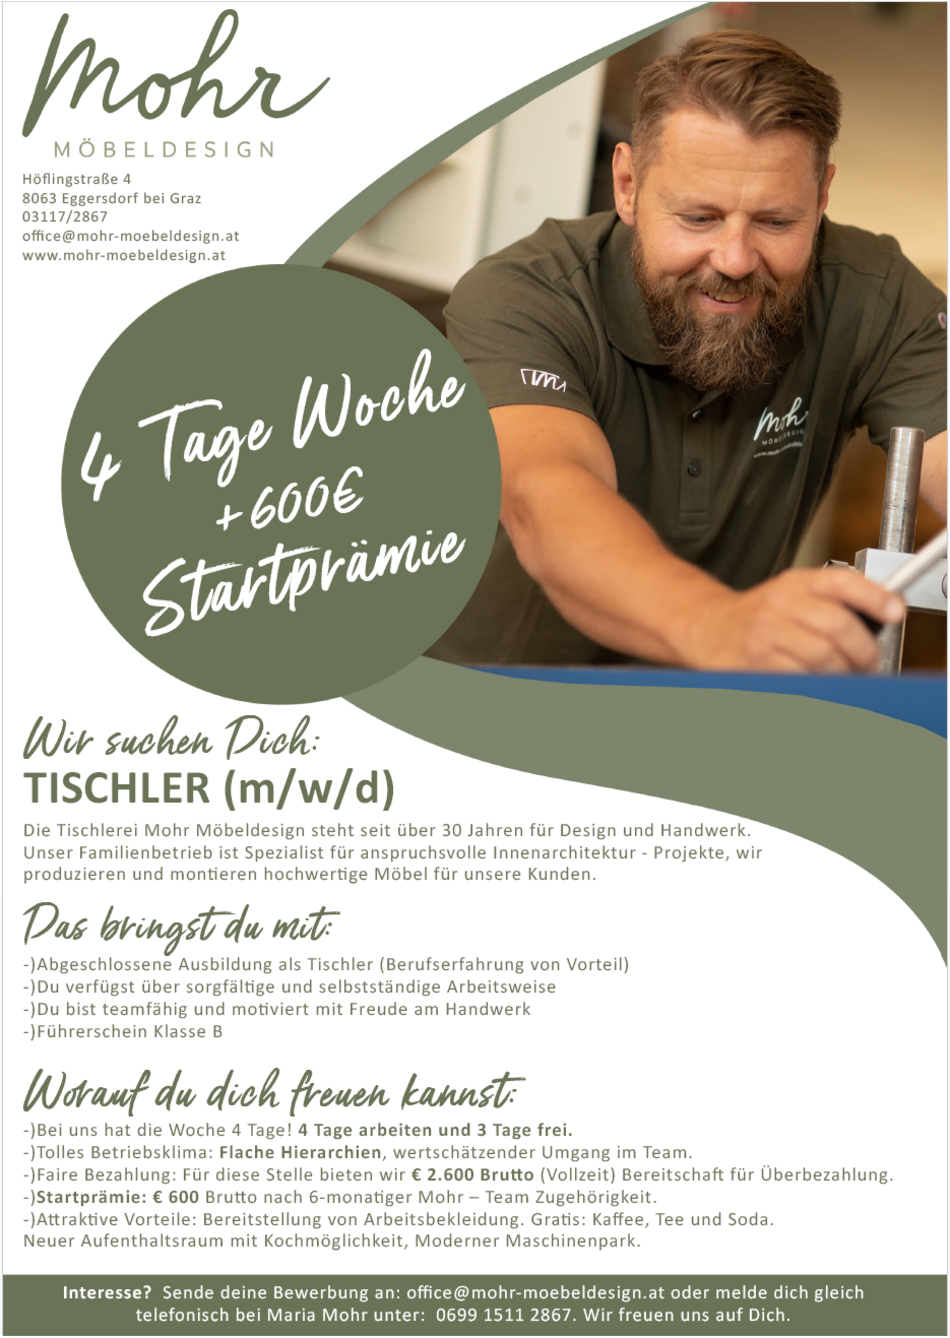 Tischler (m/w/d) - 4 Tage Woche / Startprämie